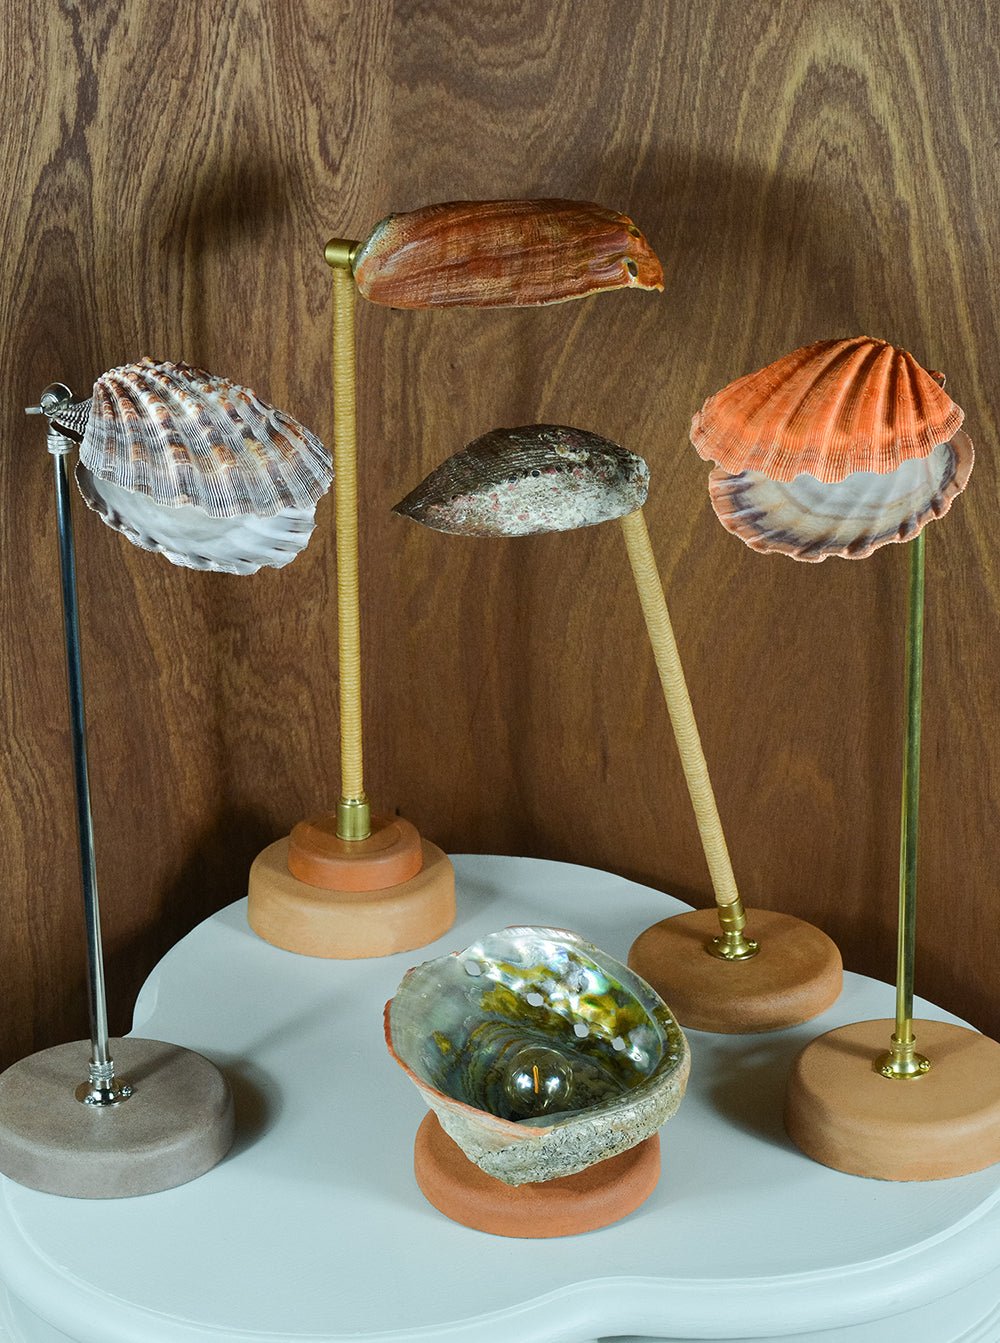 'Abalone Task Lamp' with Natural Seashell Shade — Model No. 021 - Tennant New York